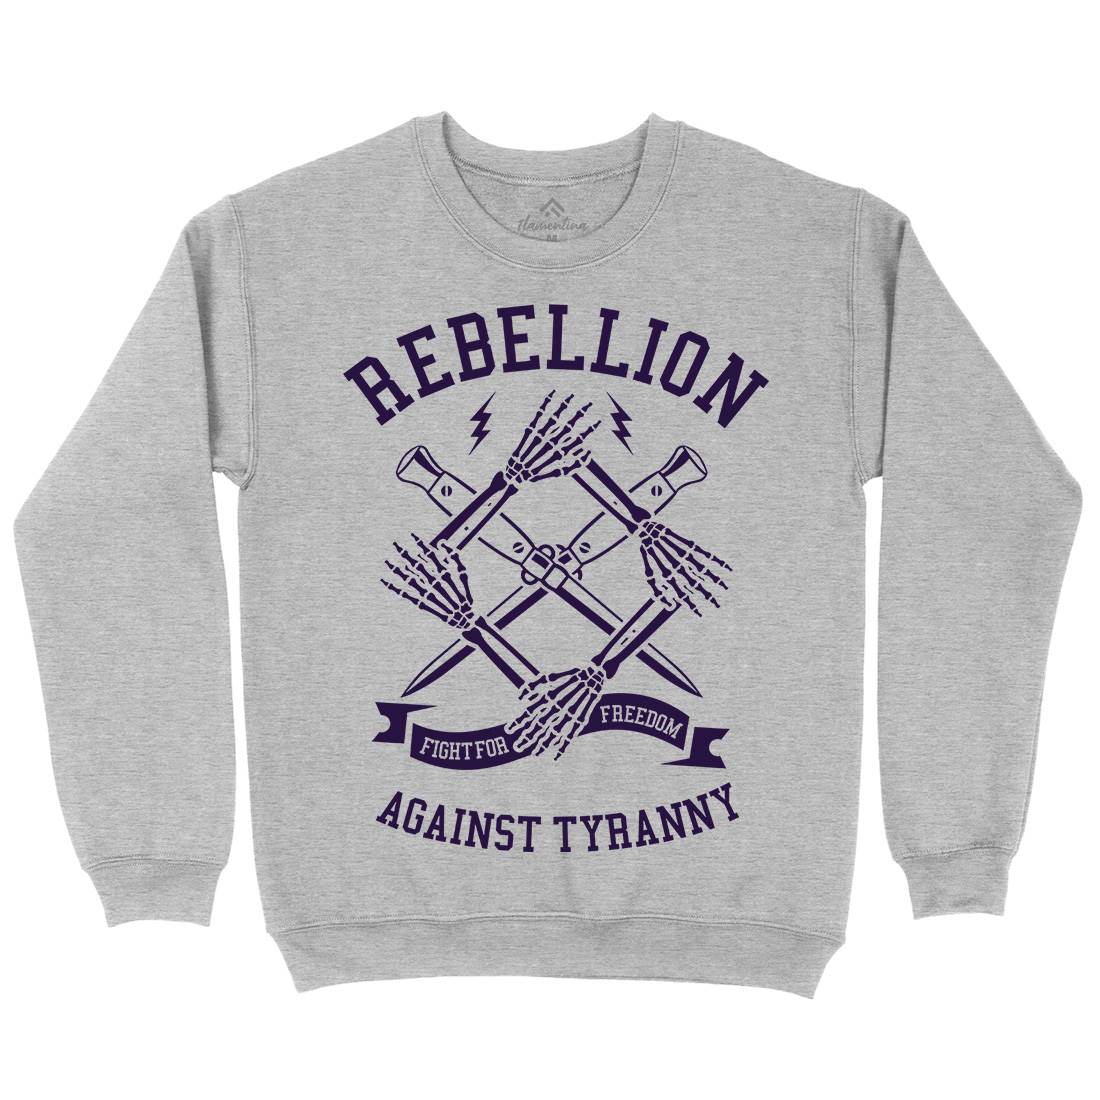 Rebellion Kids Crew Neck Sweatshirt Illuminati A266